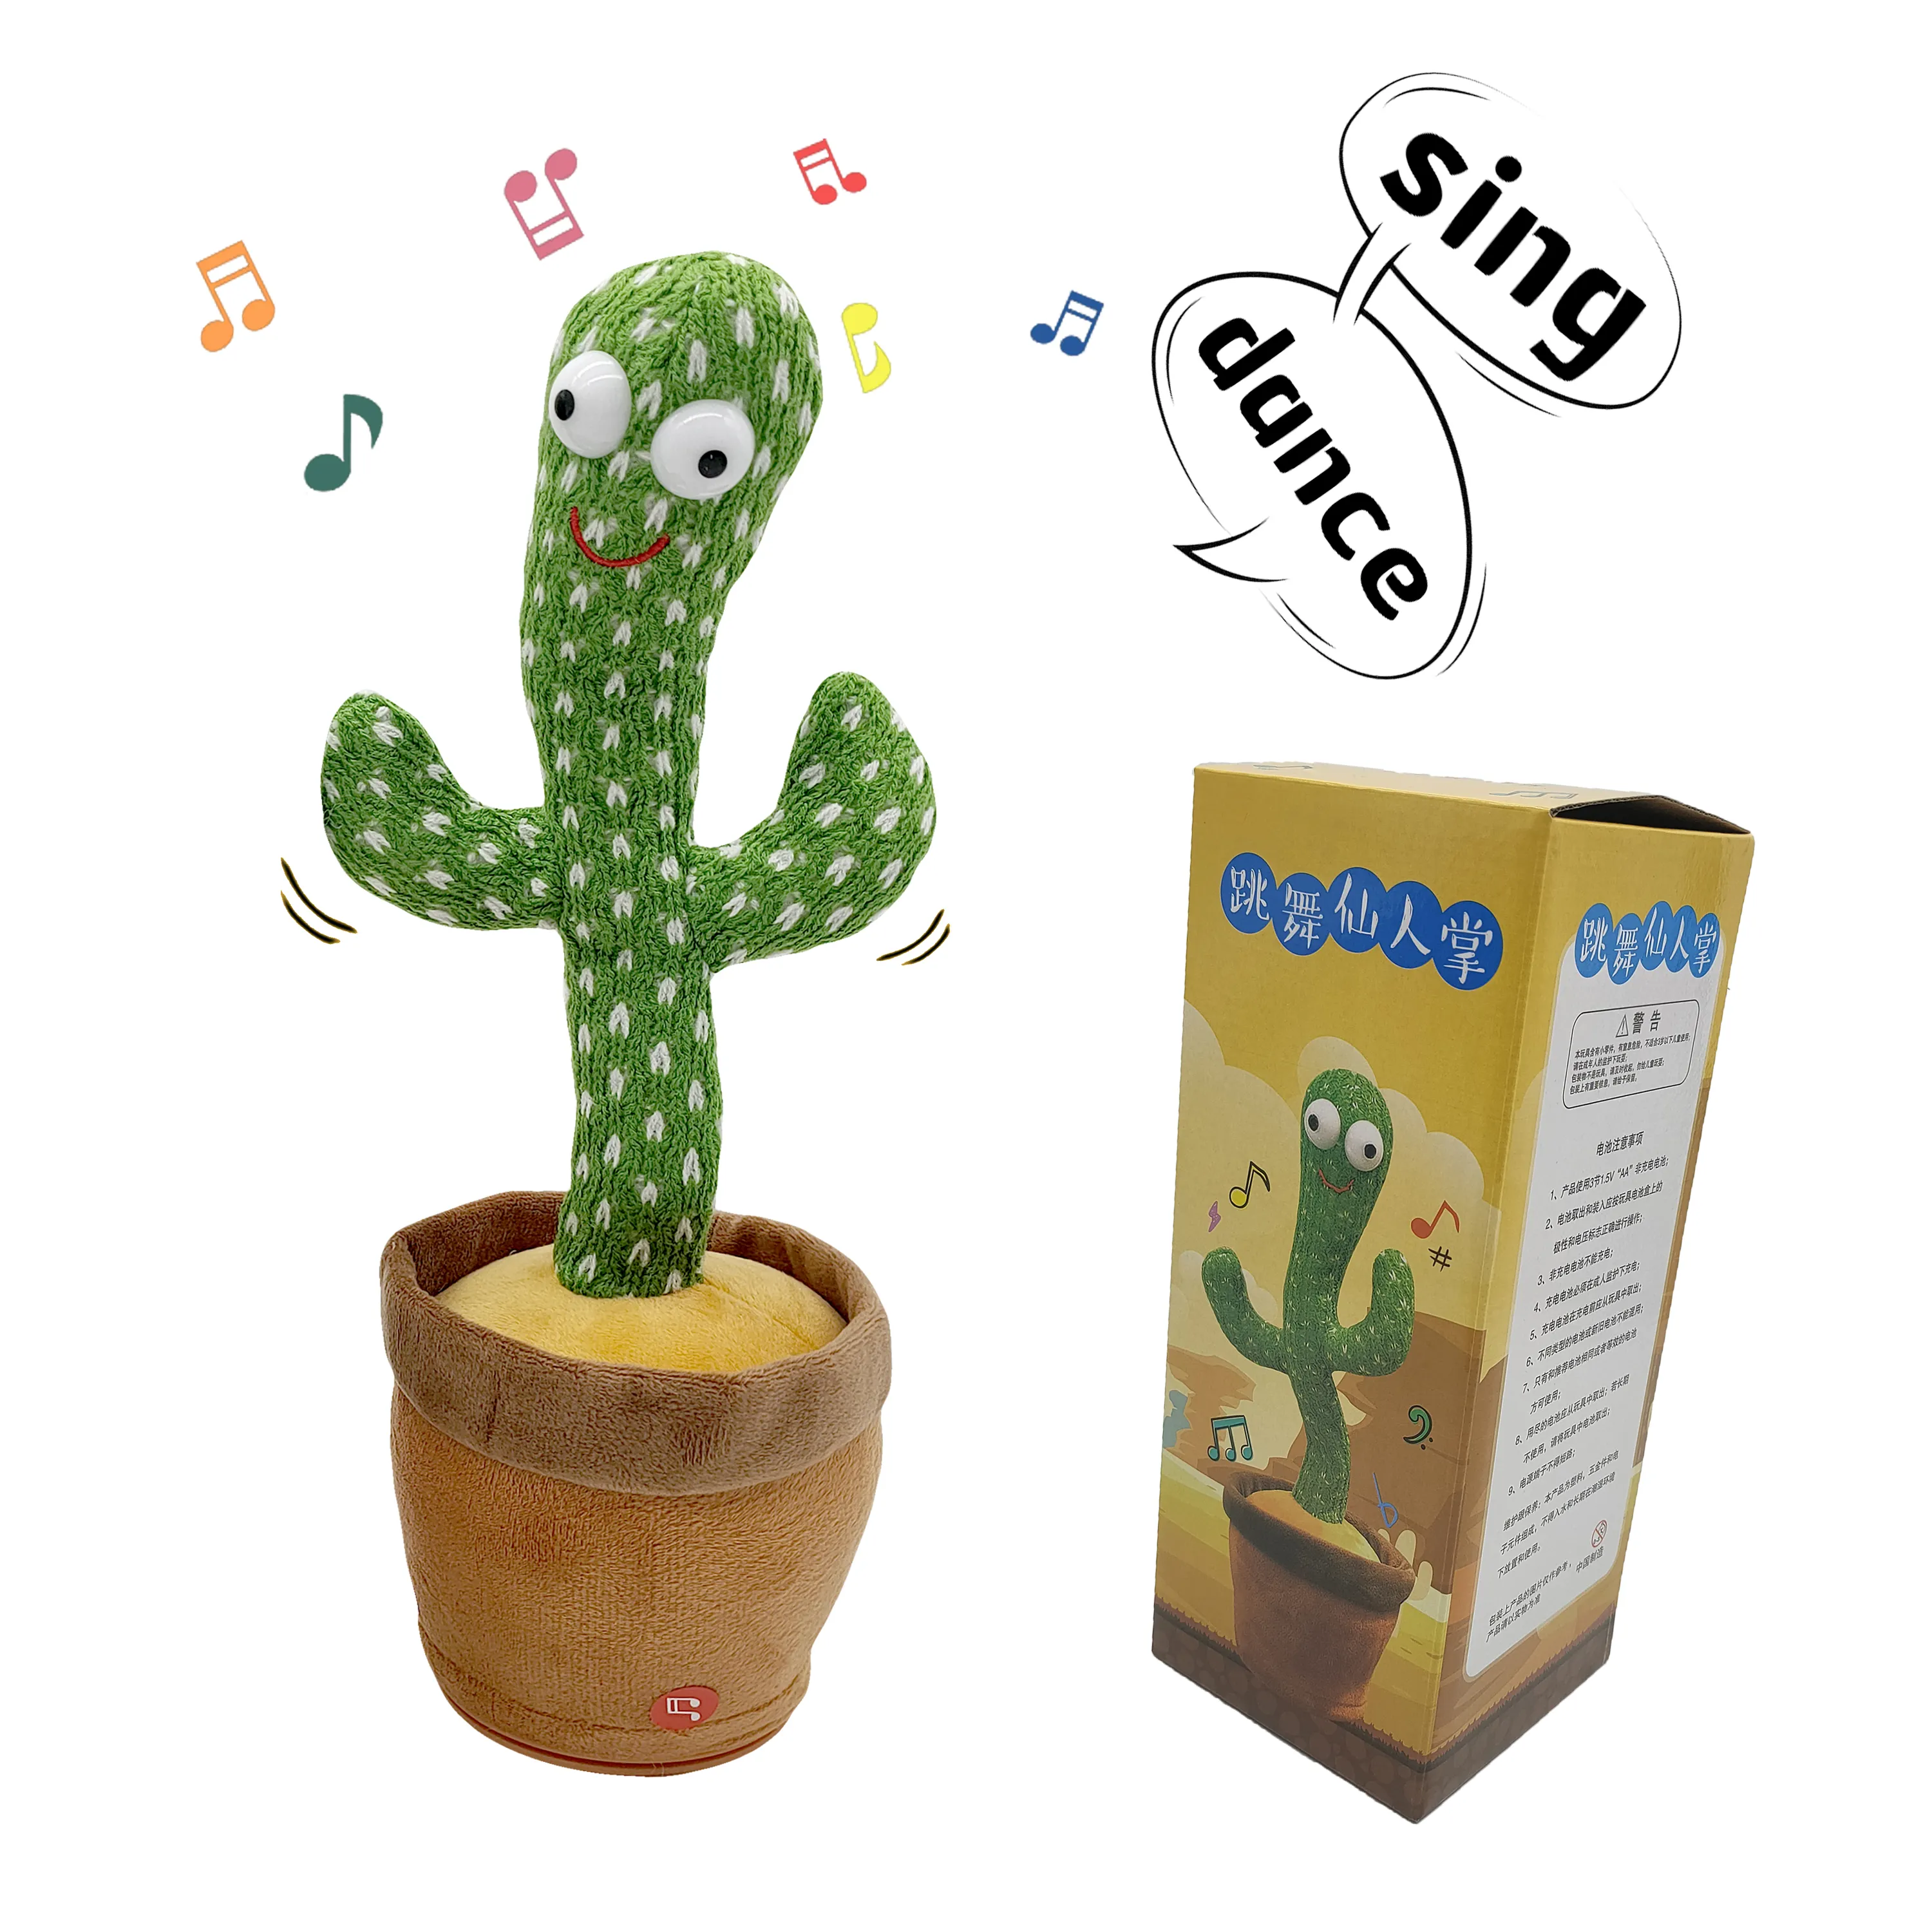 Nueva venta caliente bailando hablando elegante Cactus juguetes Bailarin de peluche de felpa de juguete con luz LED cantando Wiggly Cactus bailarina